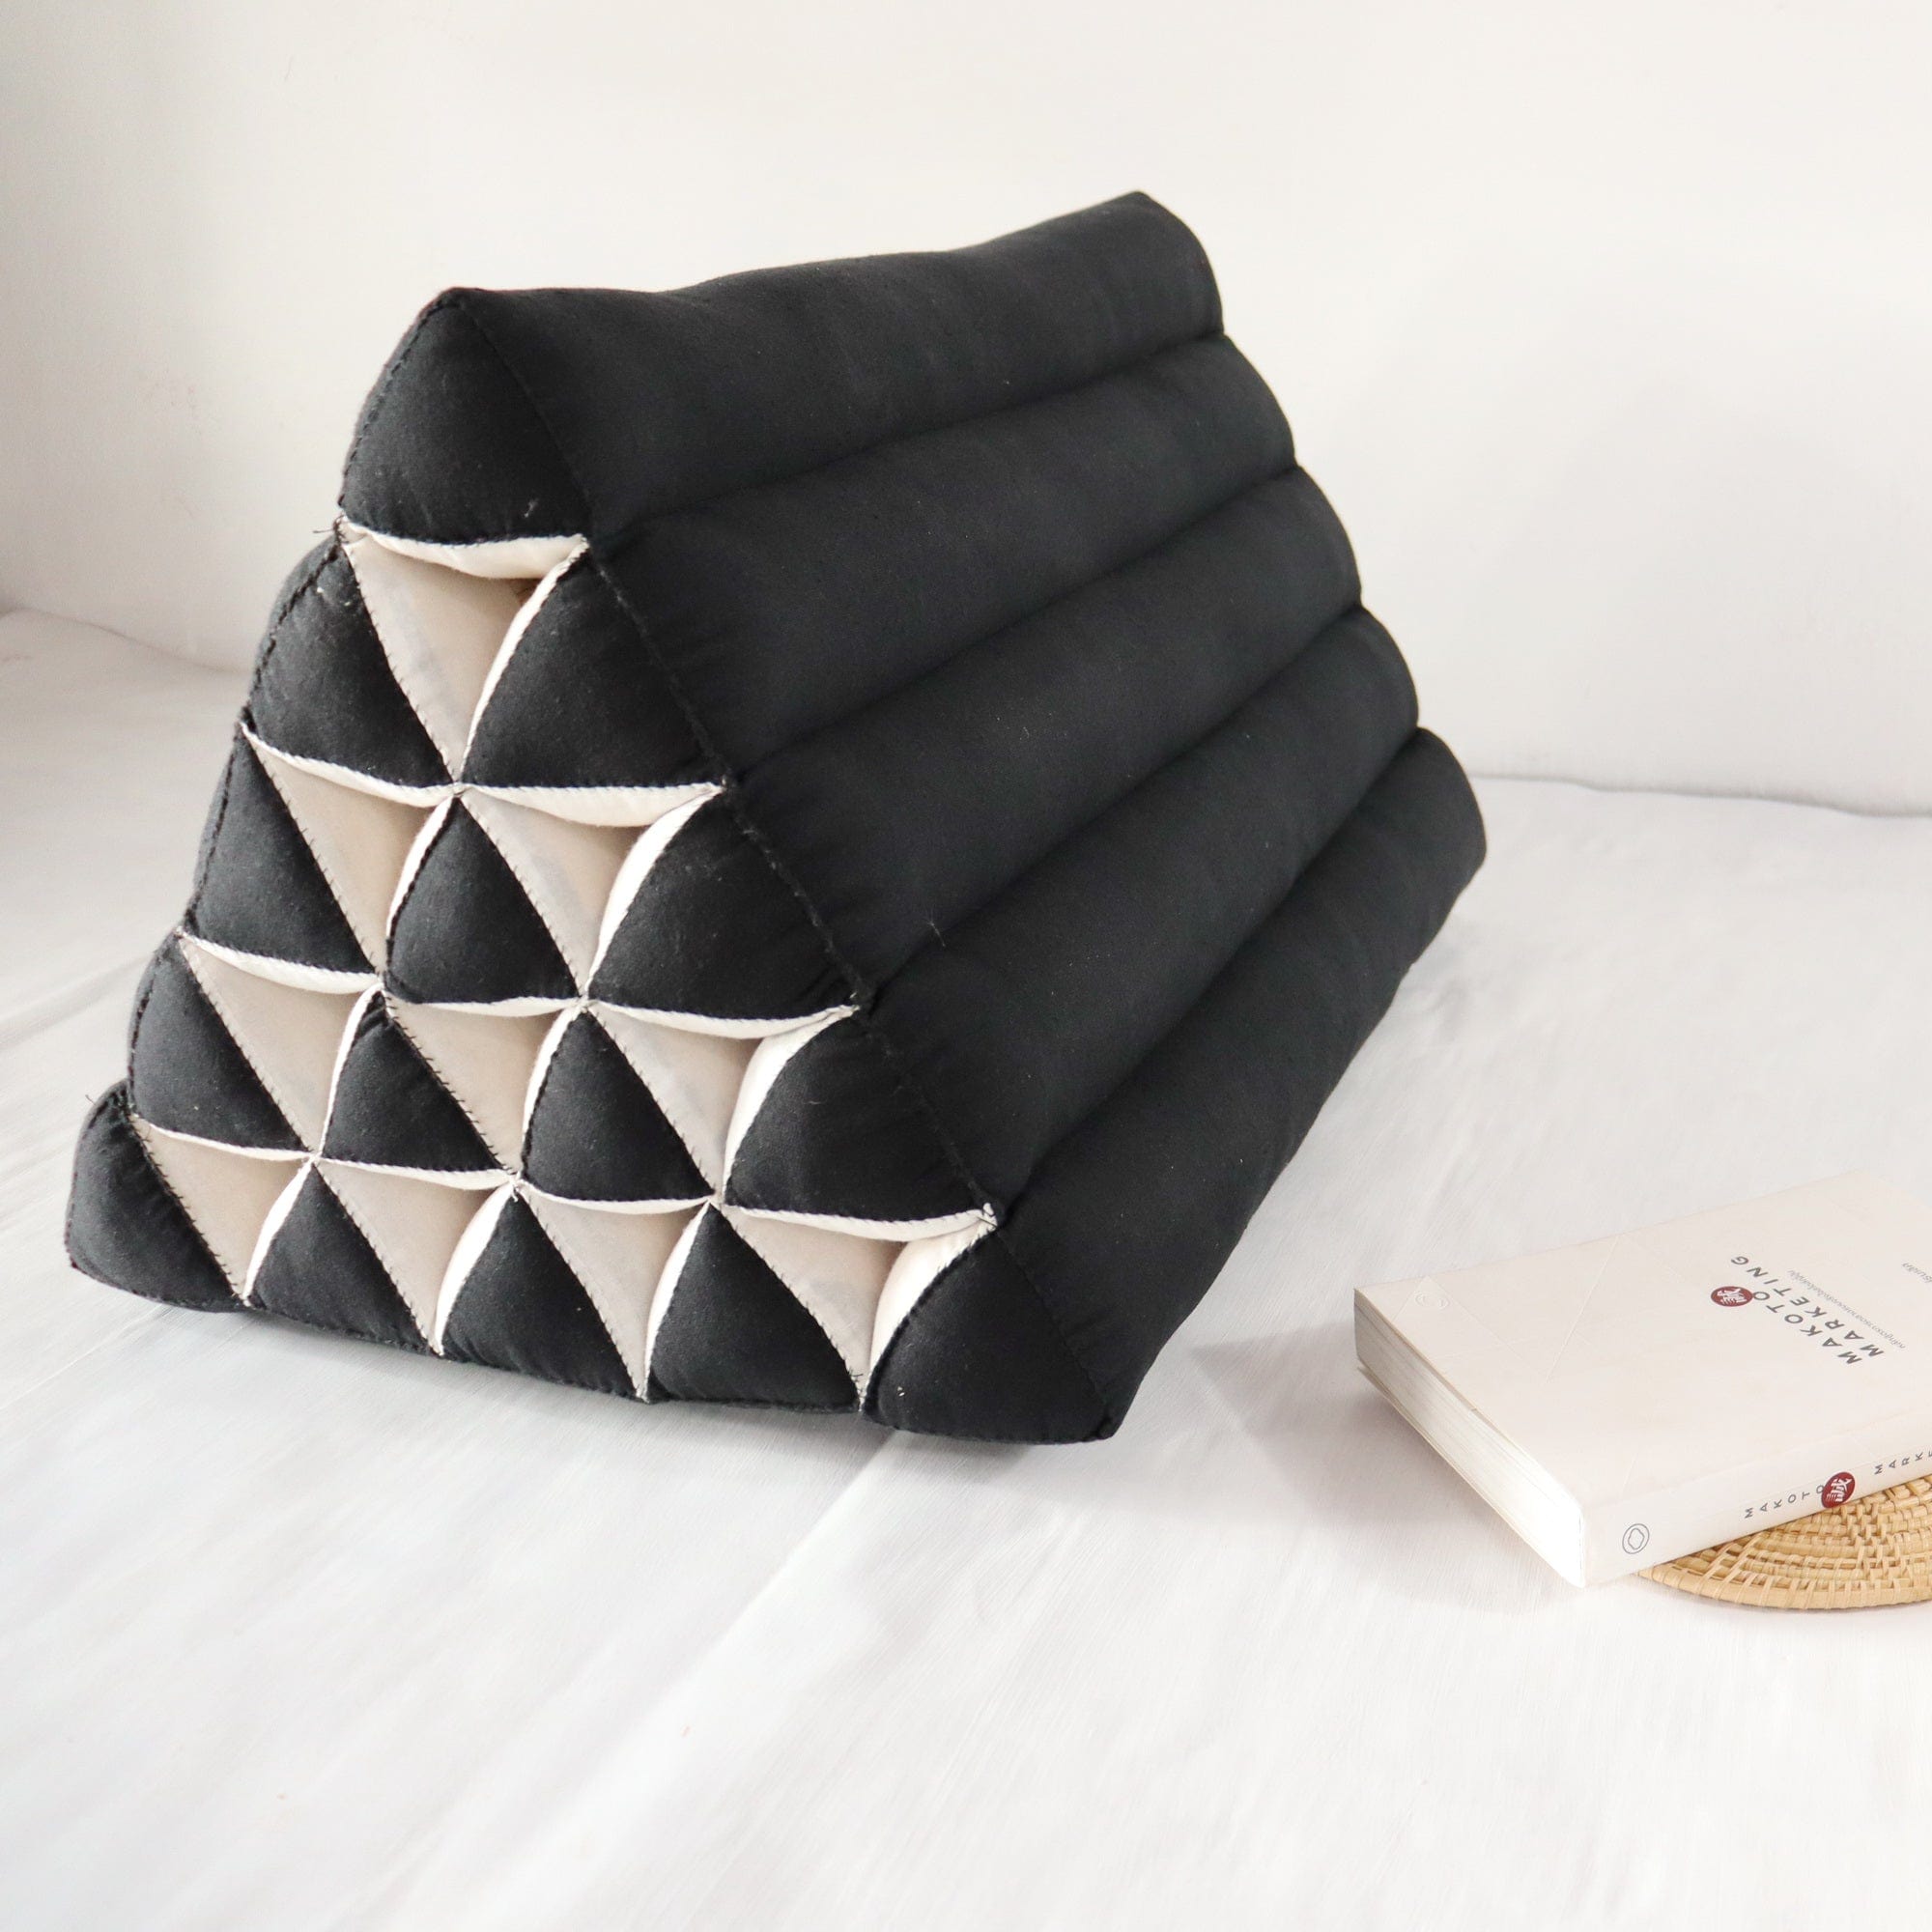 NA THA CHA - Thai Triangle Cushion (ฺBlack and White)